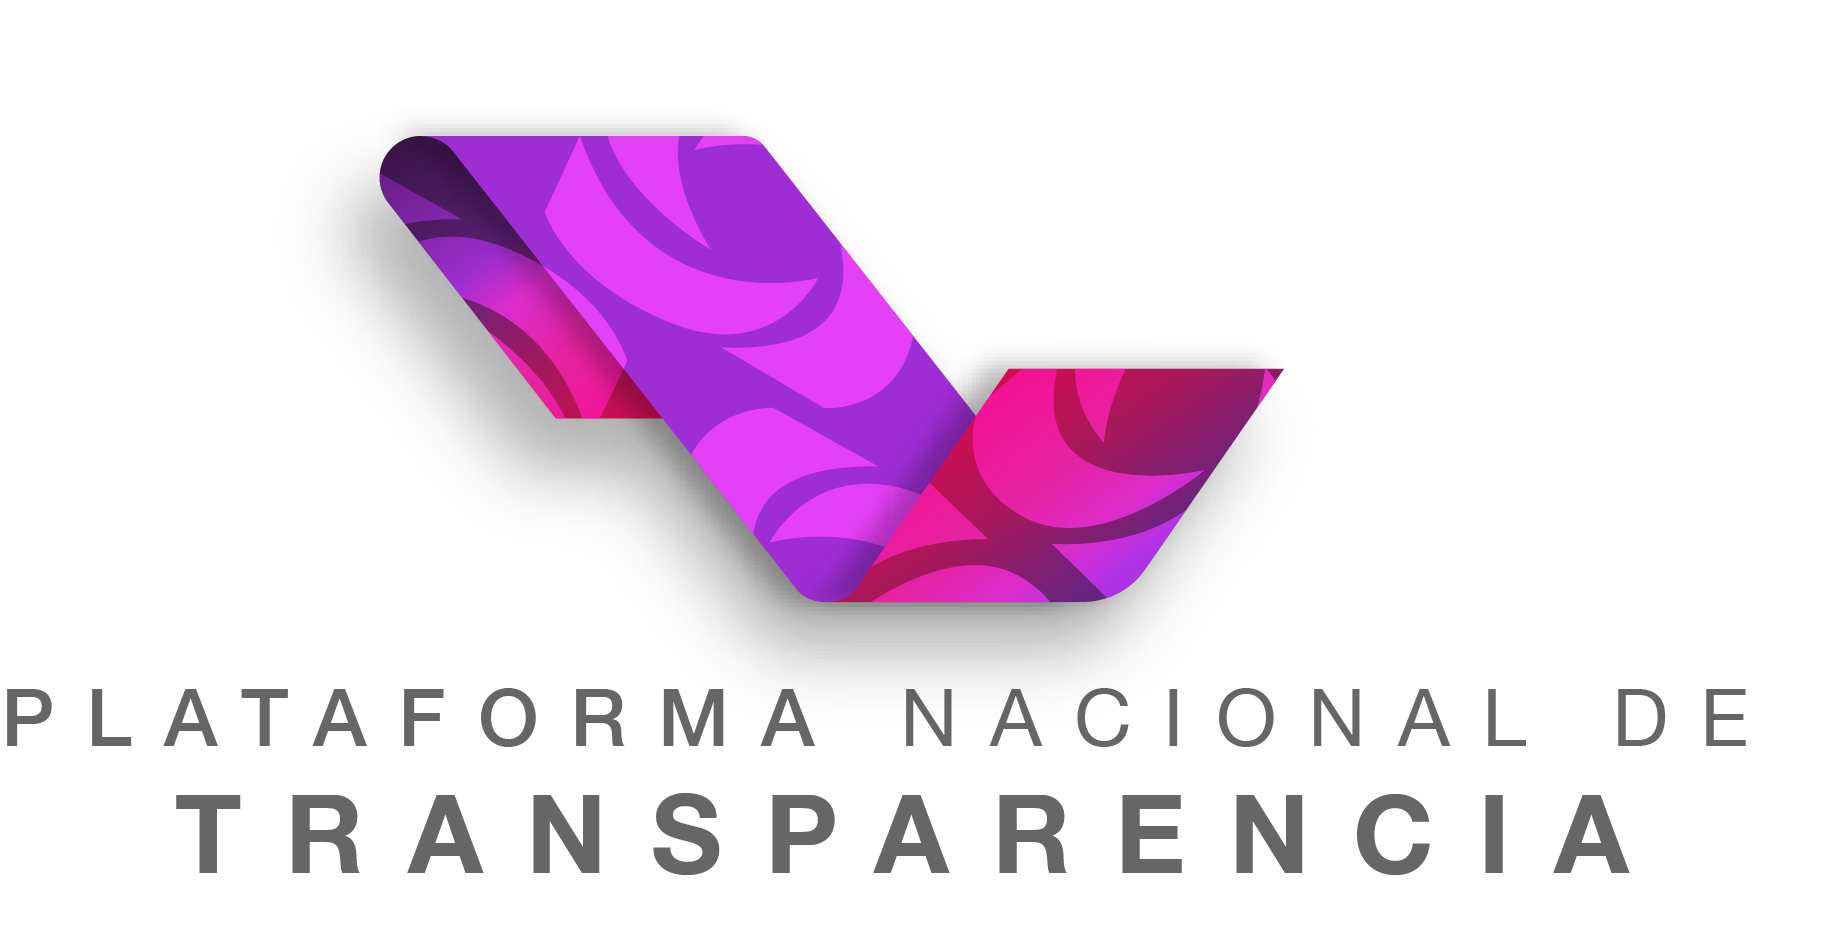 5 de mayo, Sexto aniversario de la Platafoma Nacional de Transparencia #PNT